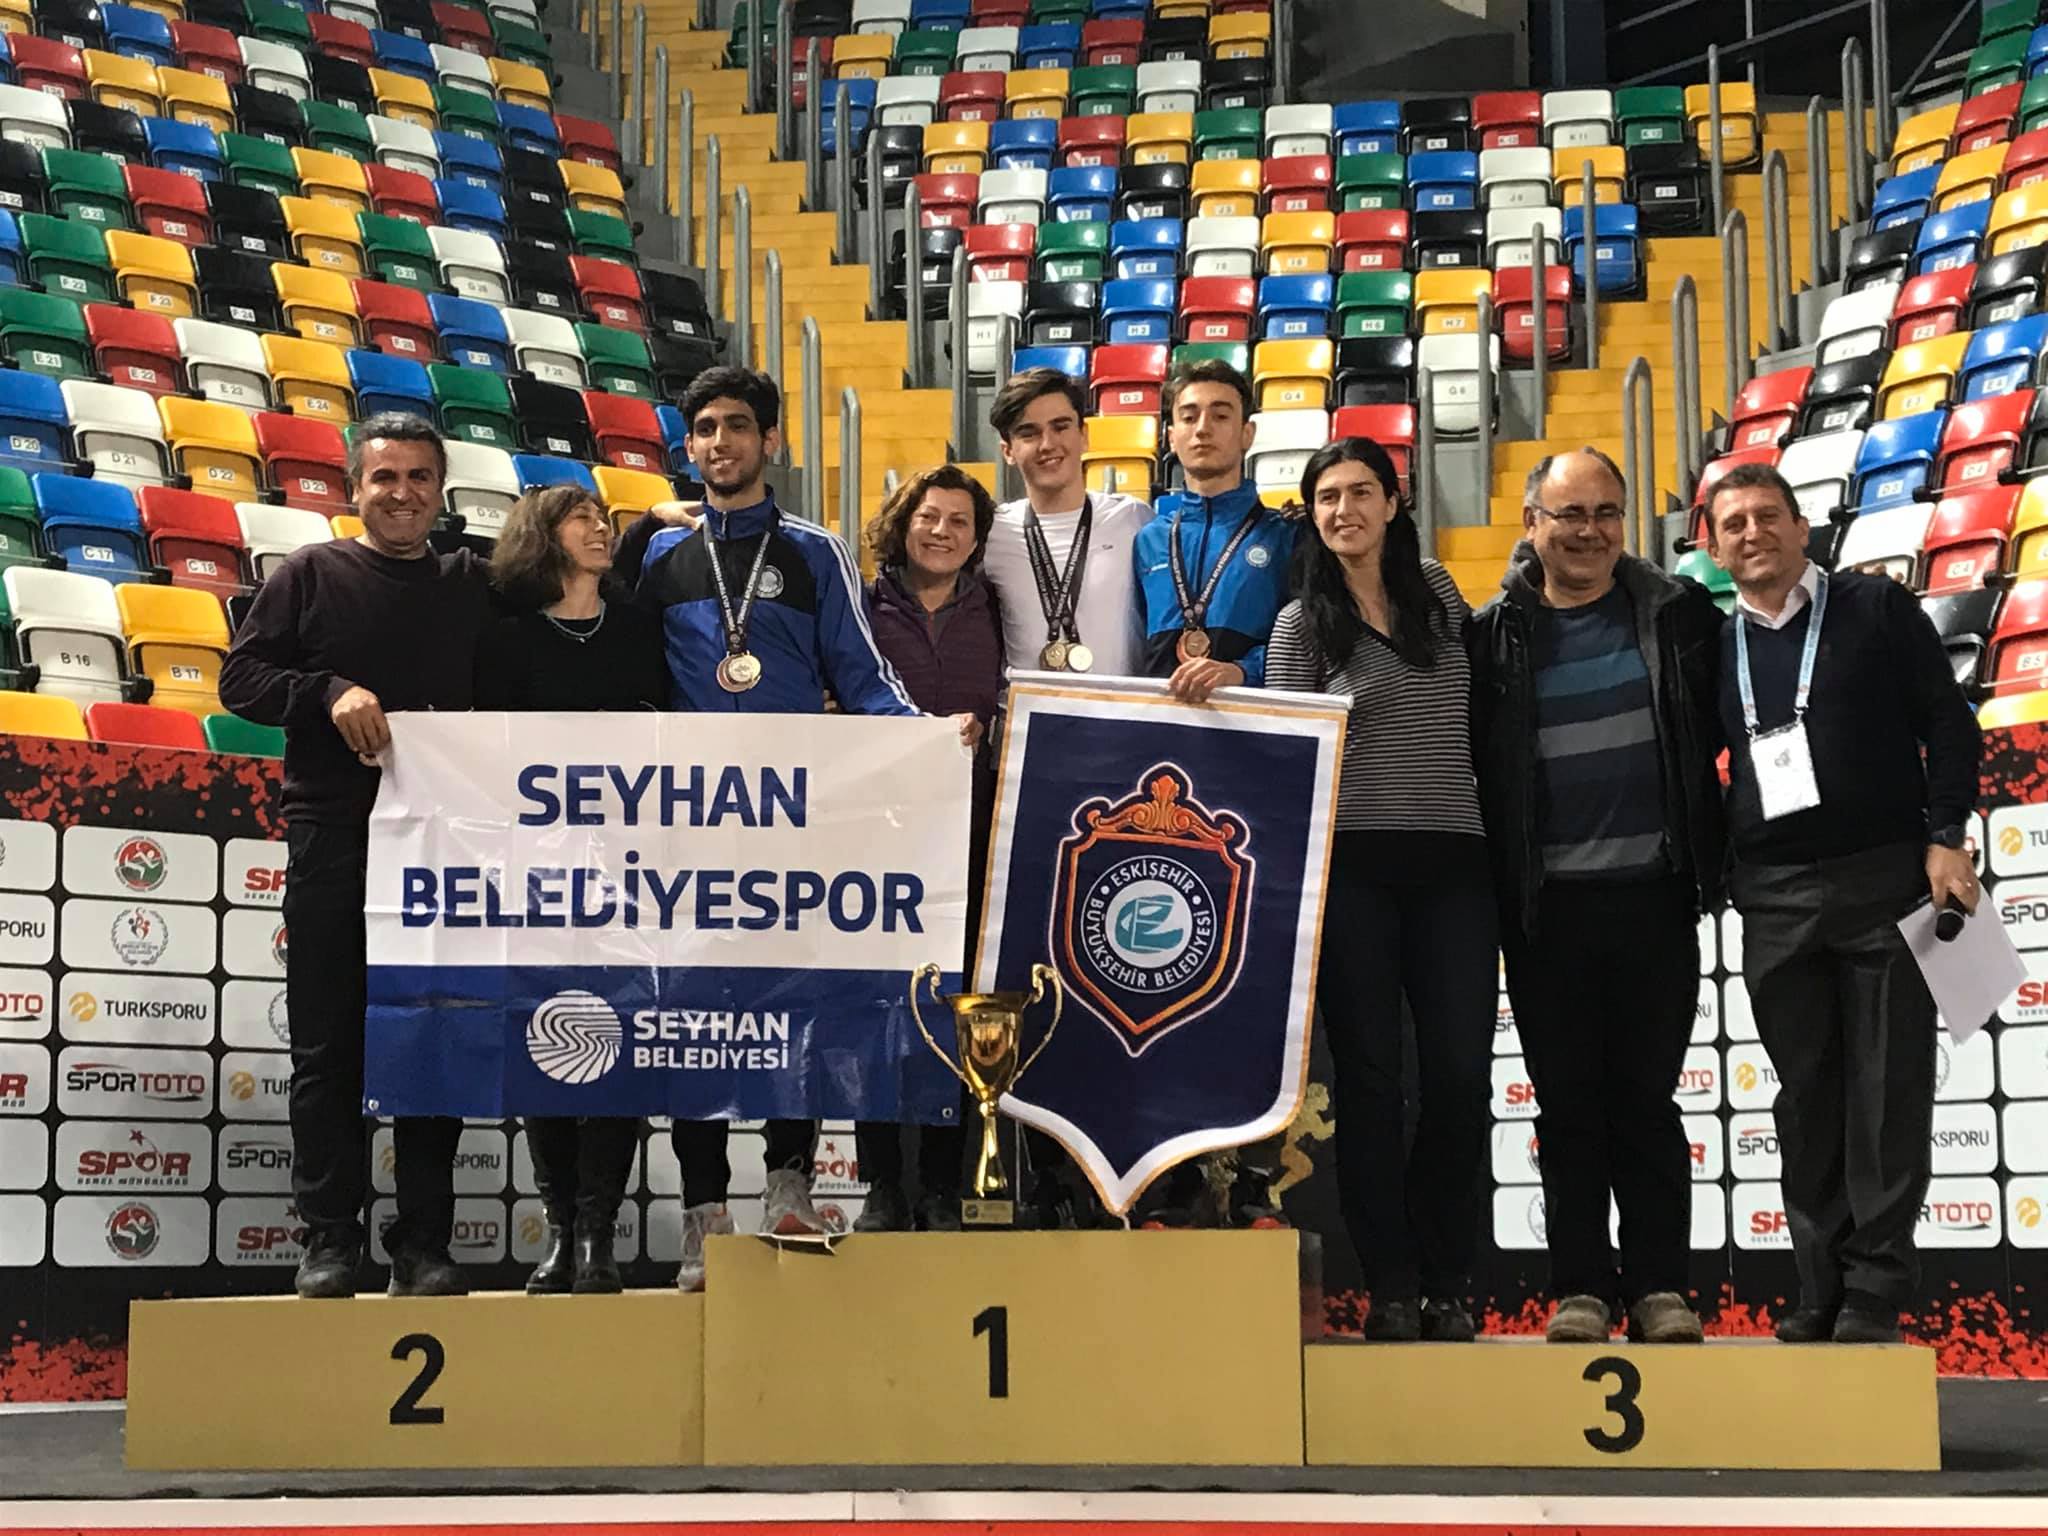 Milli Atlet Mustafa Anıl Korkmaz Türkiye’yi Temsil Edecek